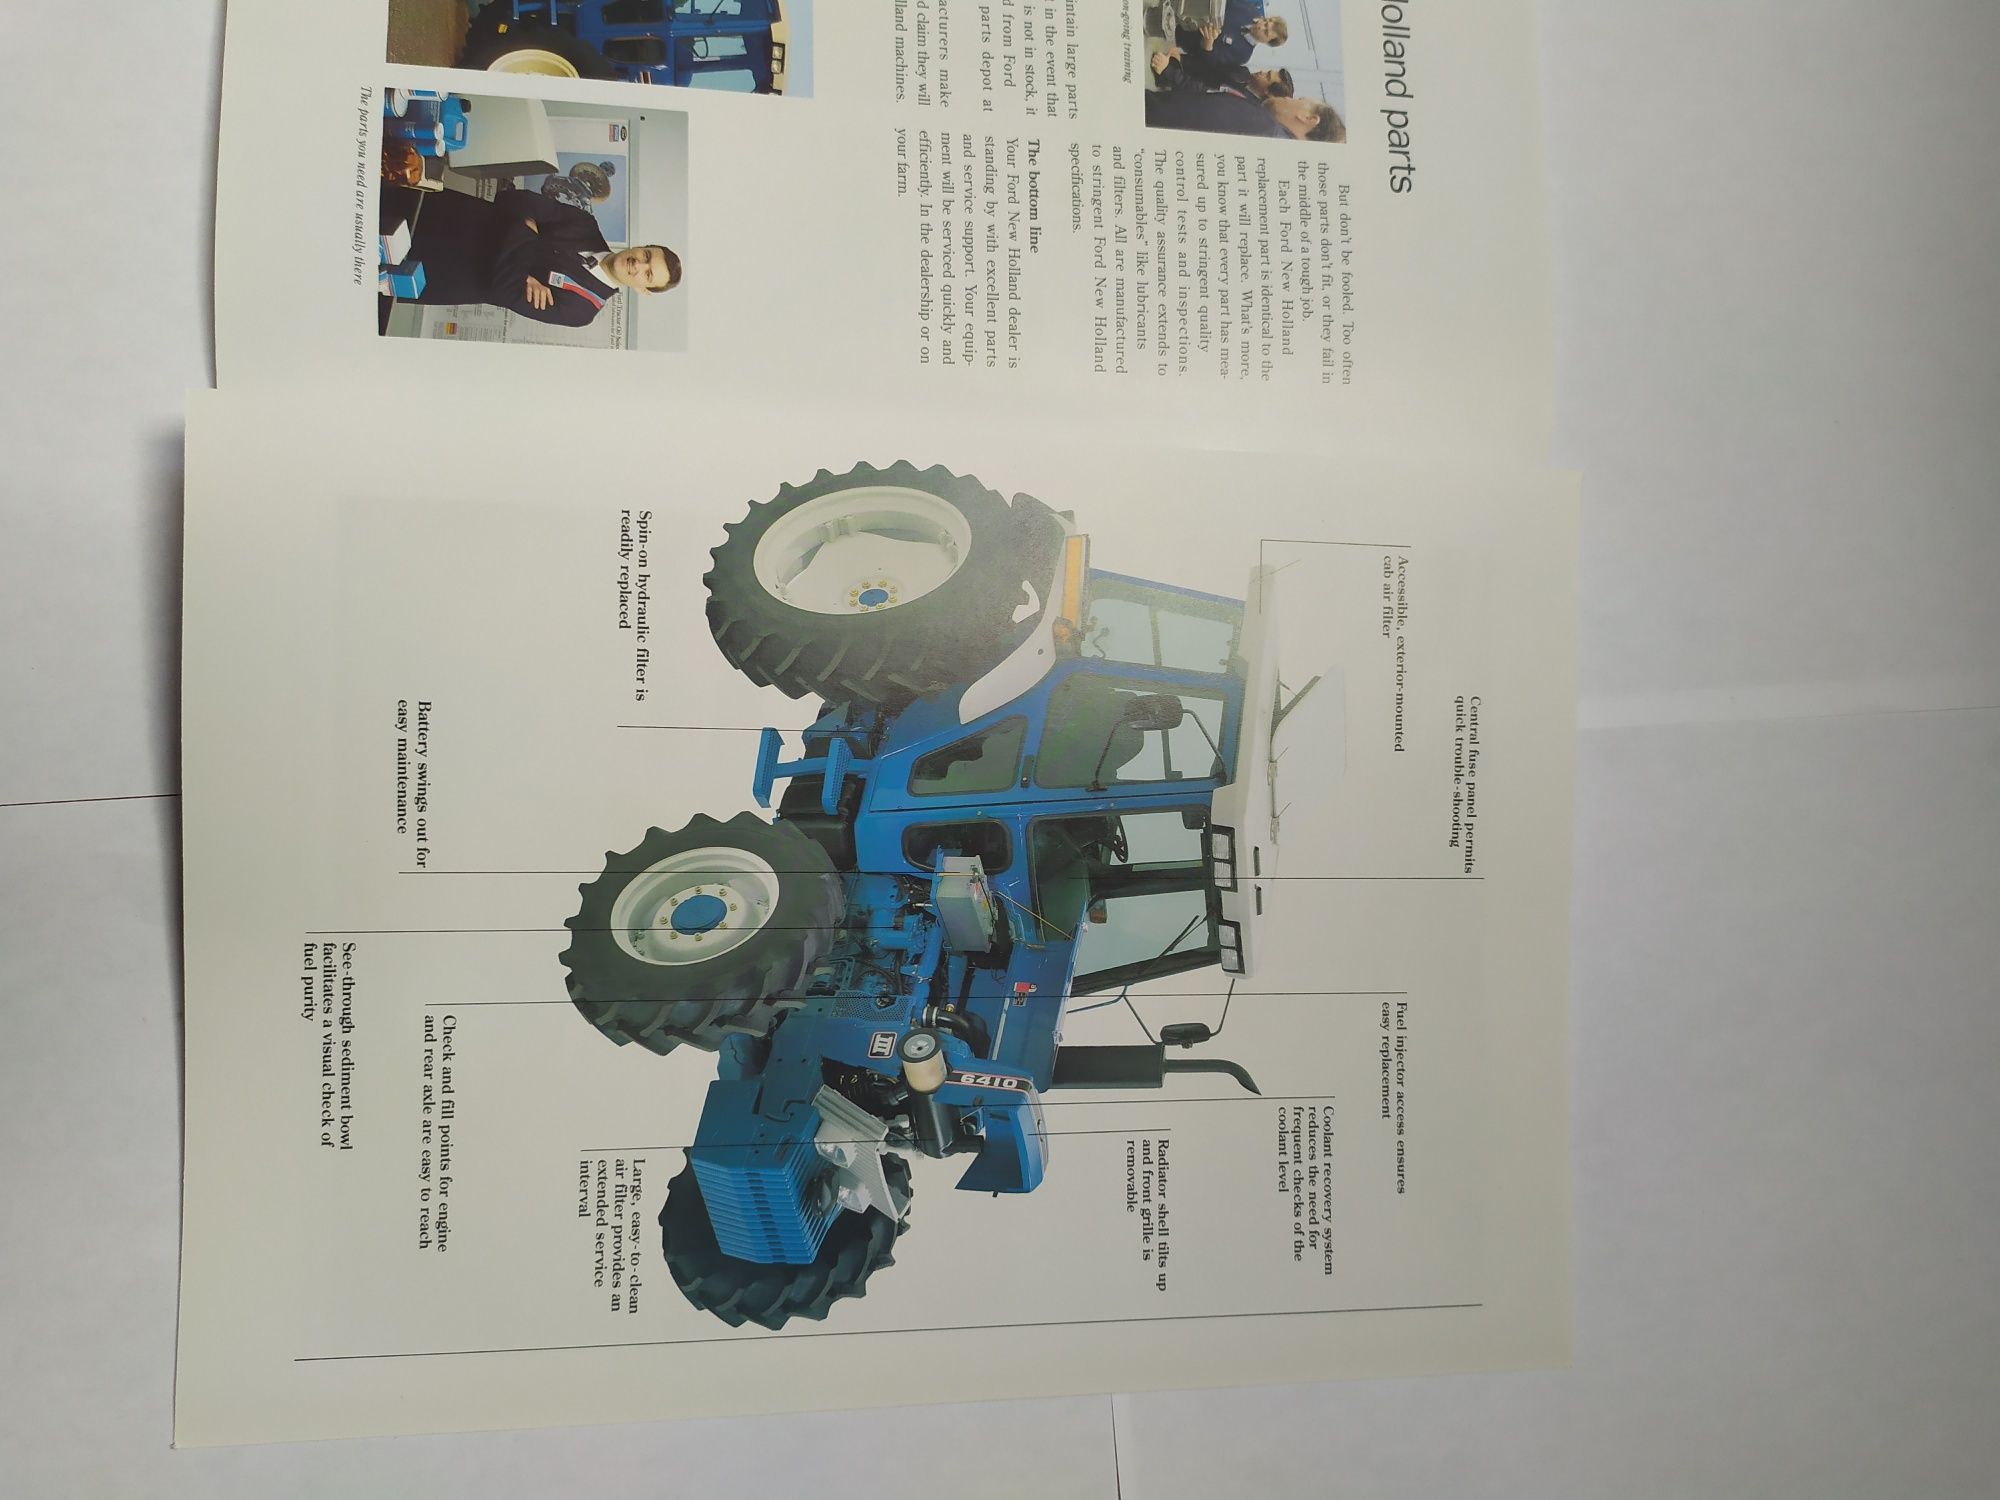 Prospekt instrukcja folder Ford III Tractors 5610/ 6410 /6810 and 76